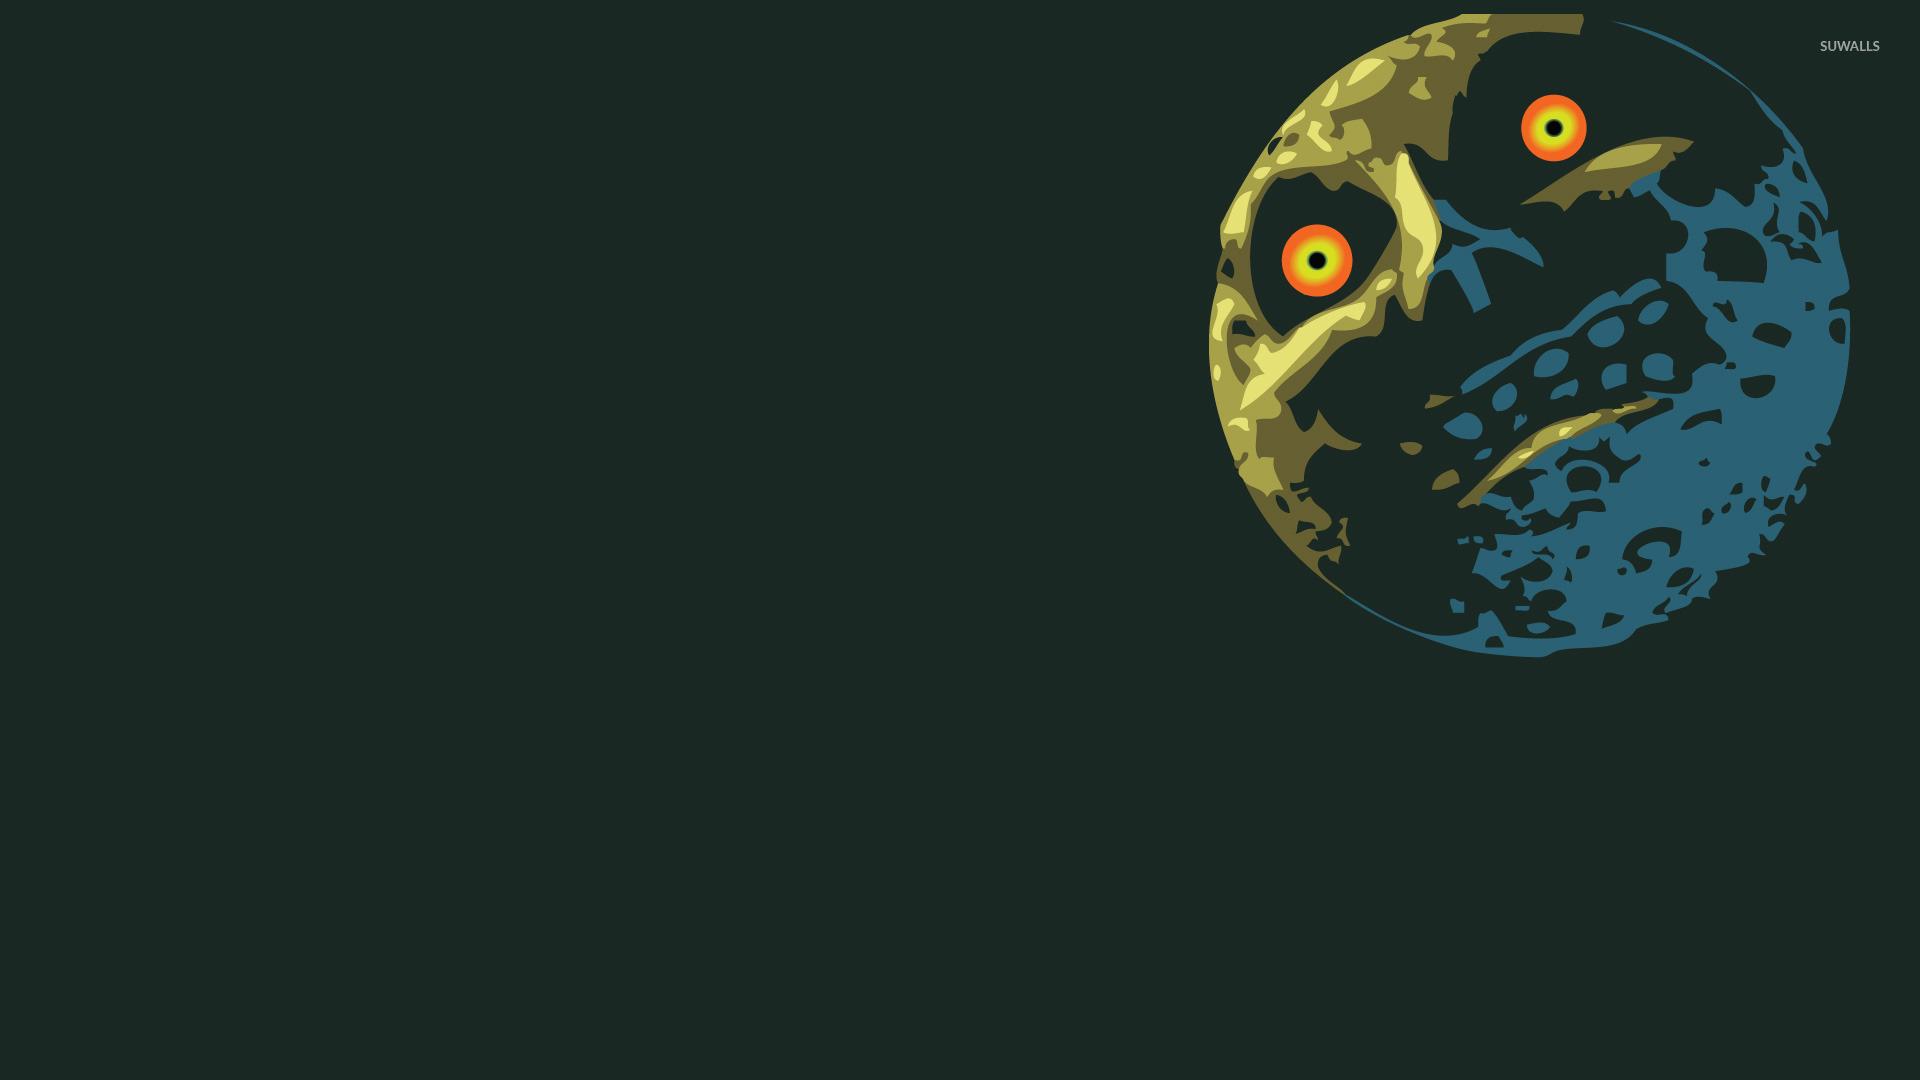 Moon Legend of Zelda: Majora's Mask wallpaper